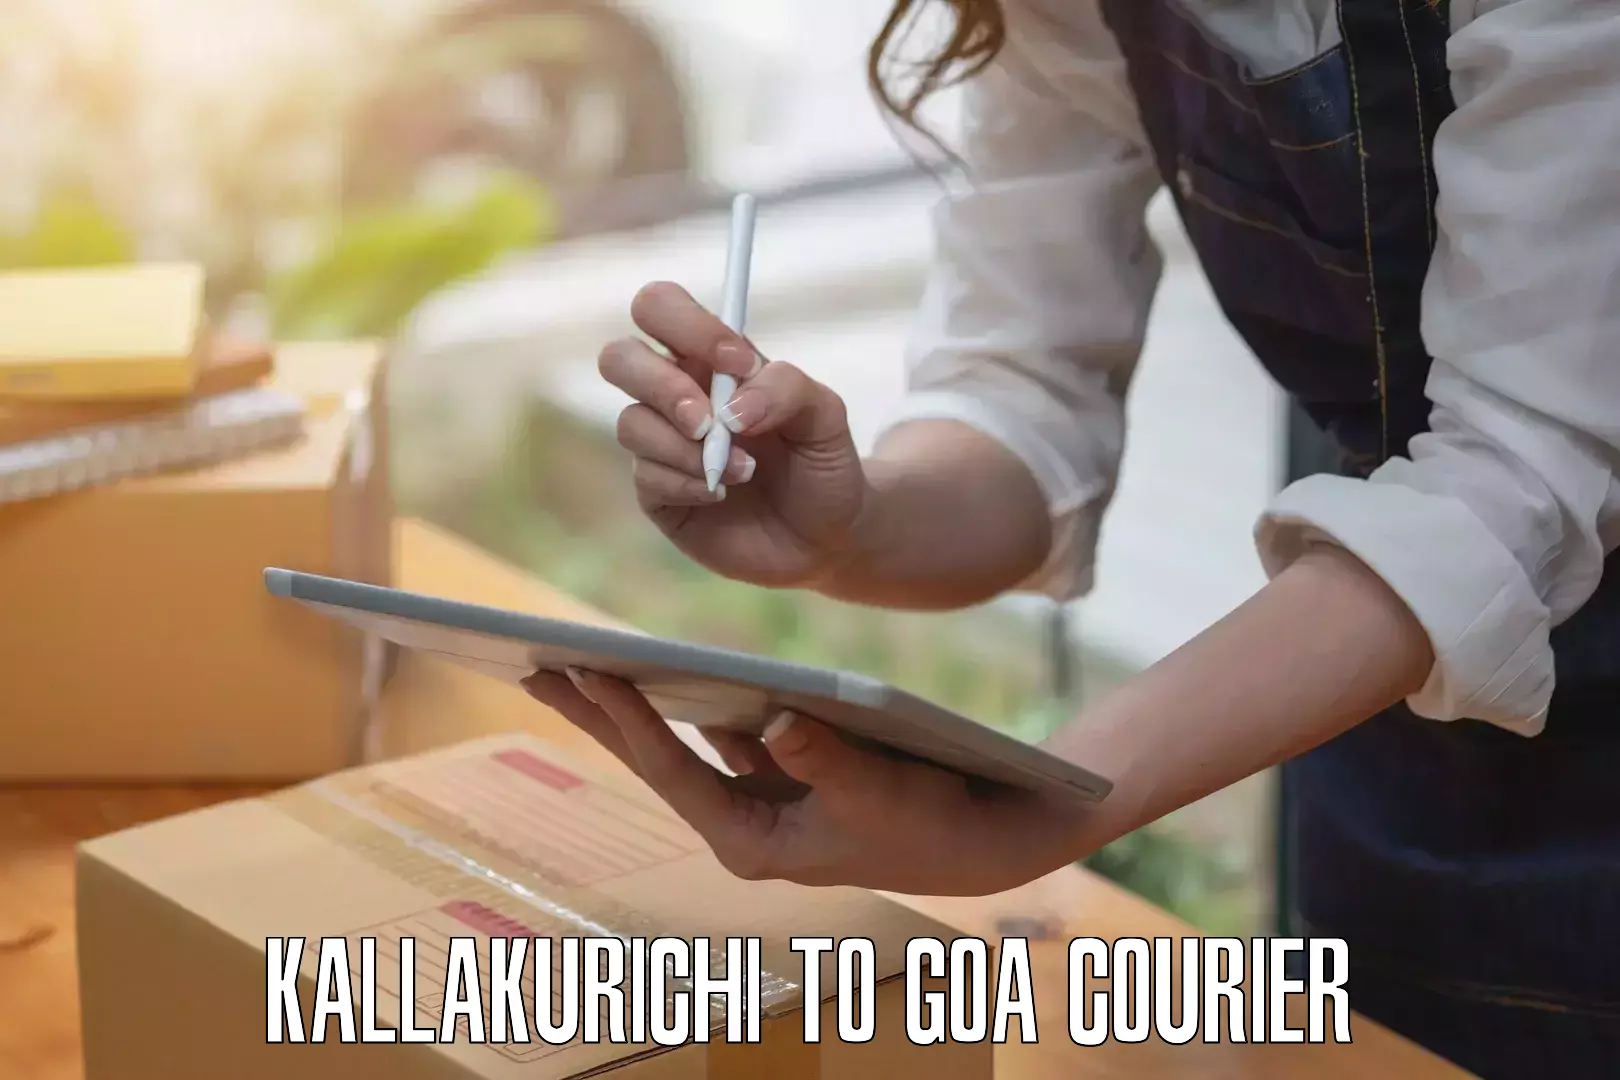 Luggage delivery estimate Kallakurichi to Goa University